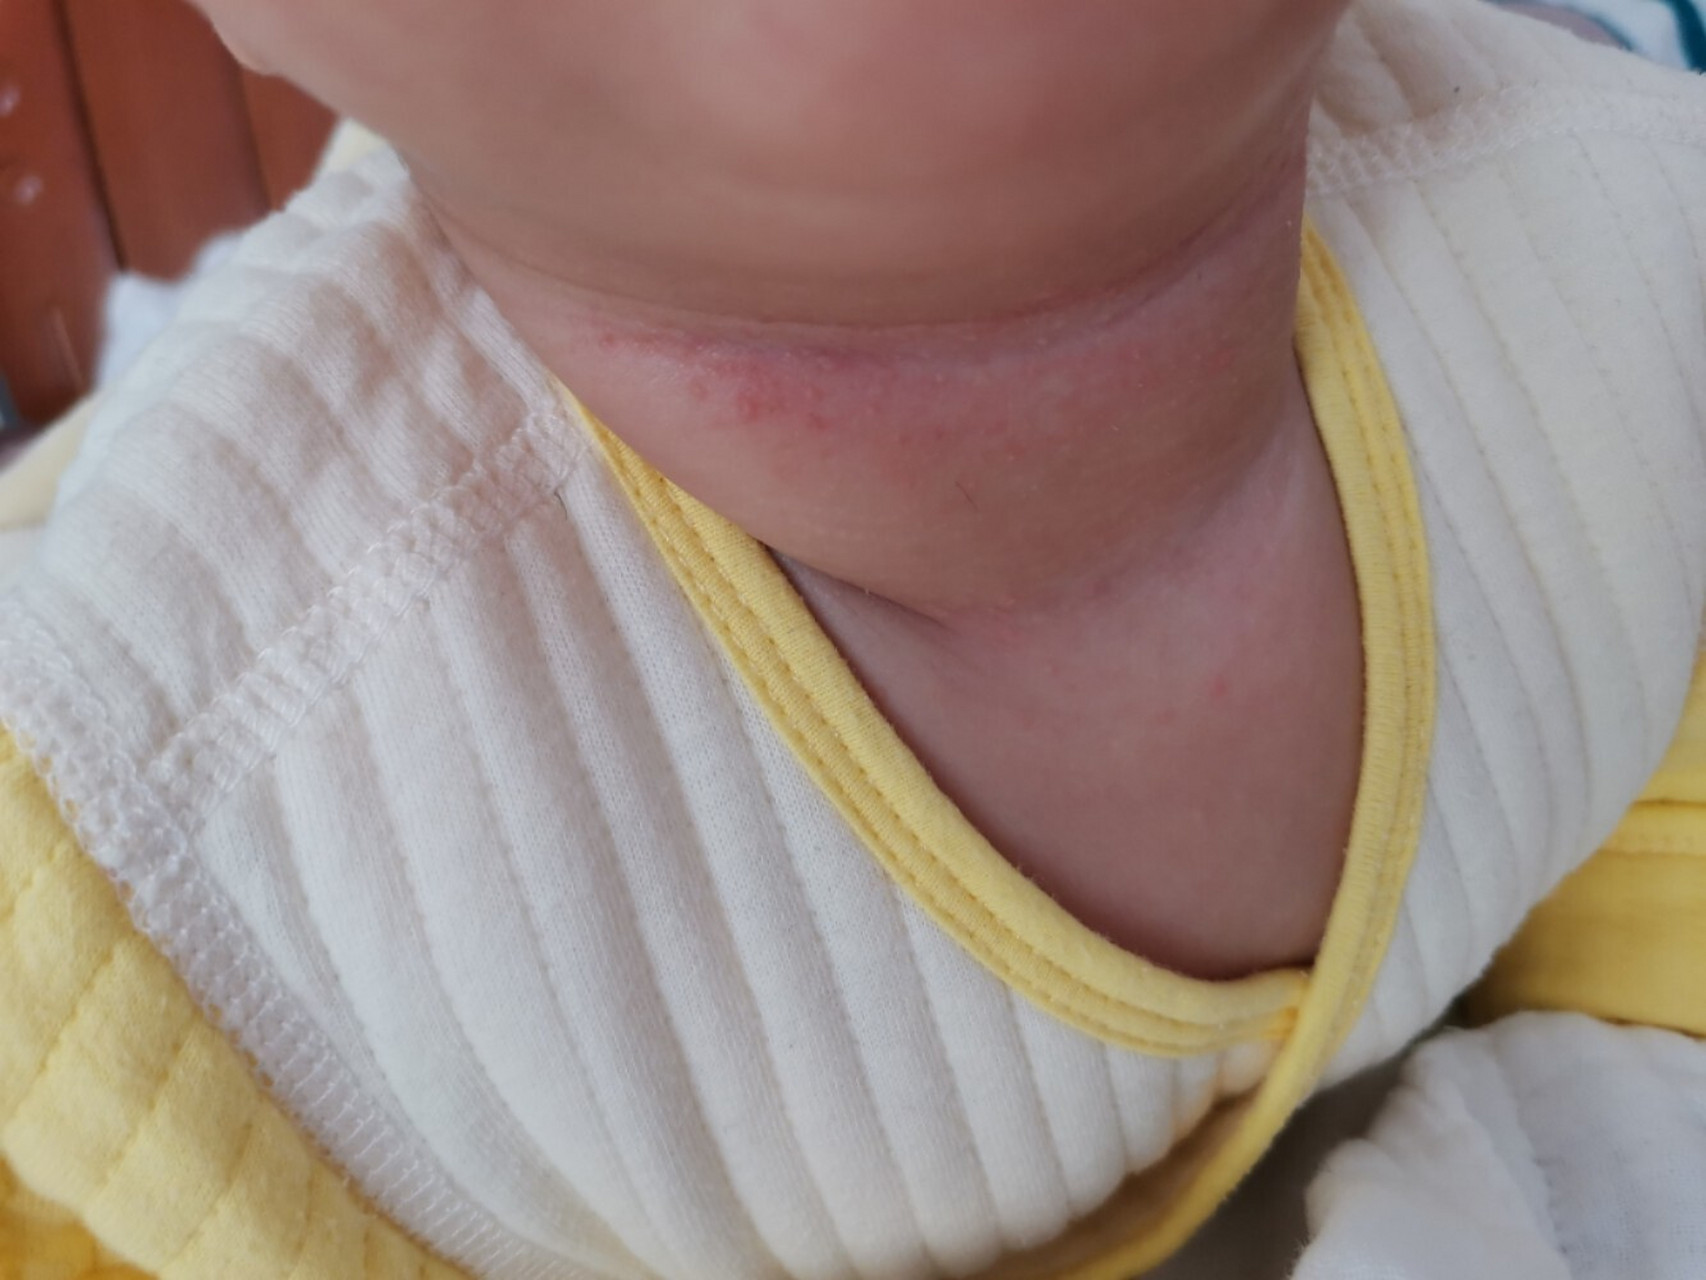 宝宝脖子起小痘痘 五个月的宝宝,脖子上起了红色的小痘痘,很是担心